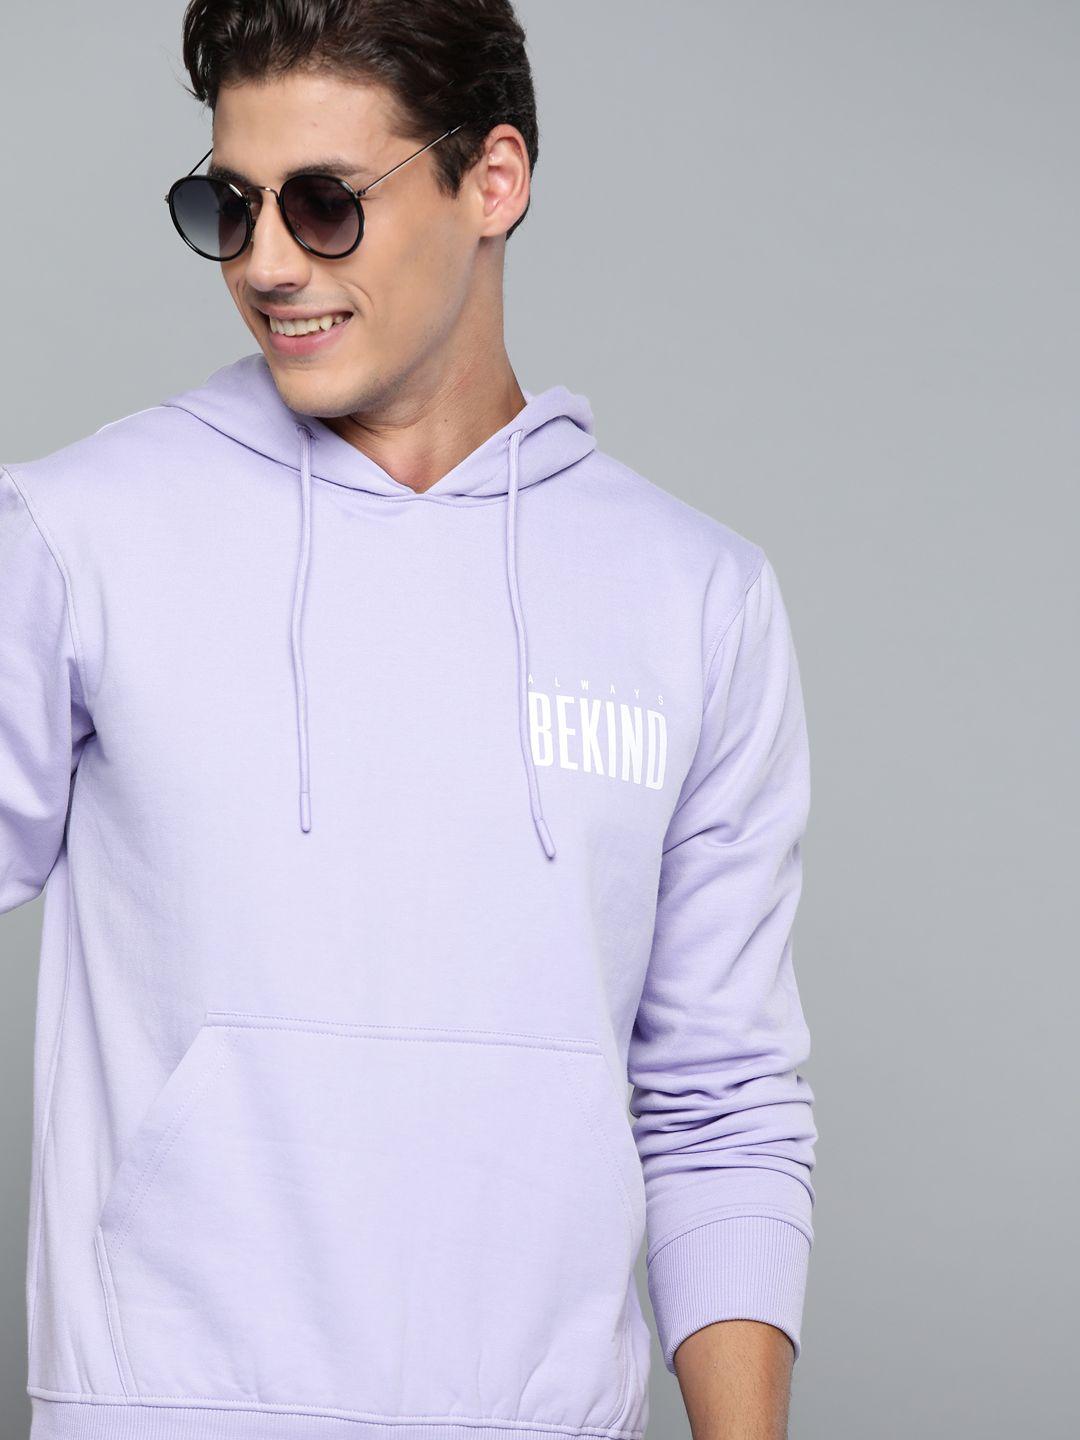 here&now-men-lavender-typography-printed-hooded-sweatshirt